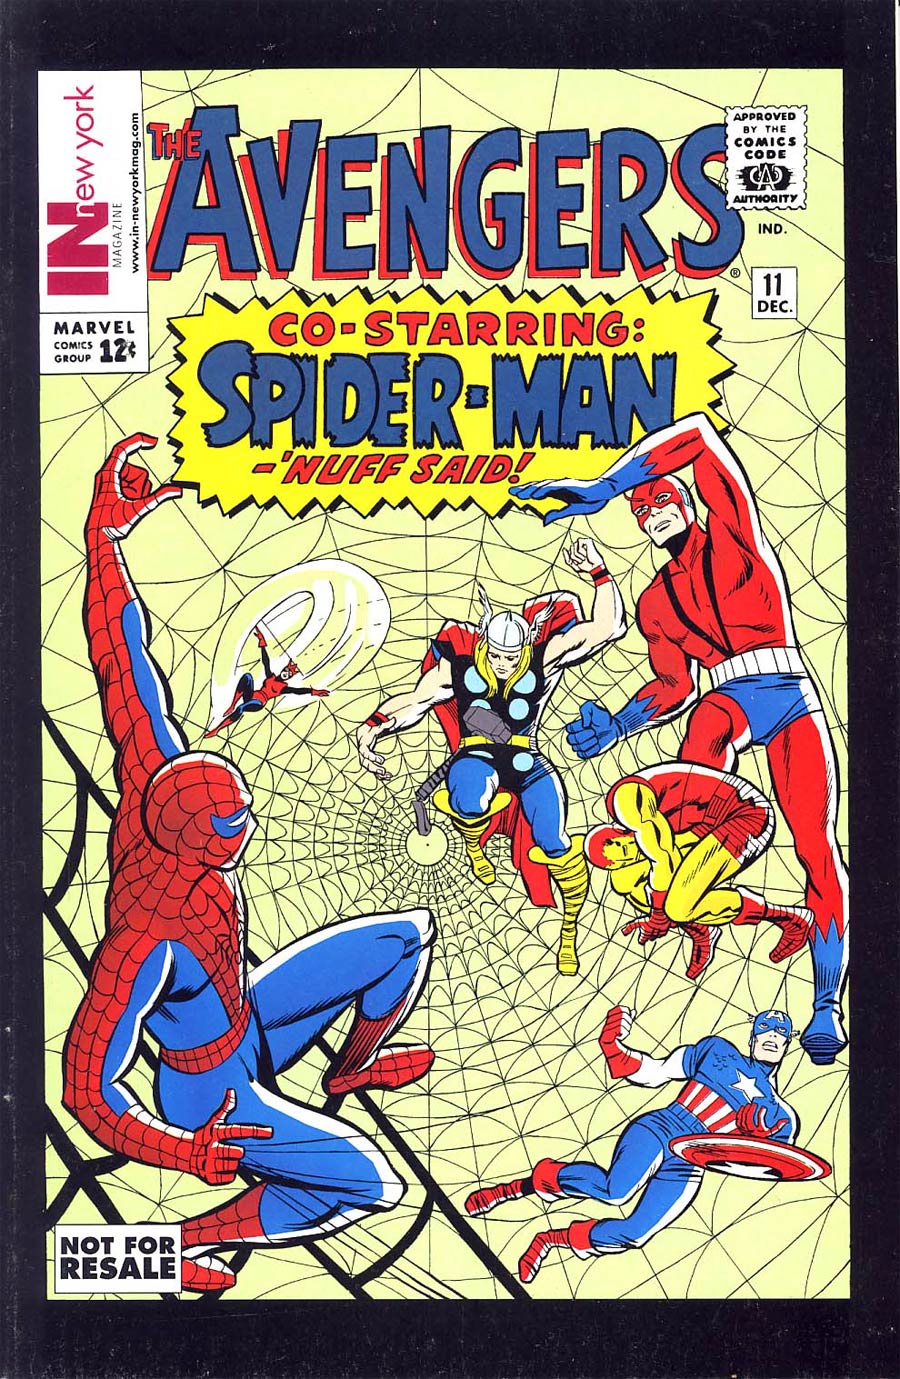 Avengers #11 Cover B In New York Magazine Reprint